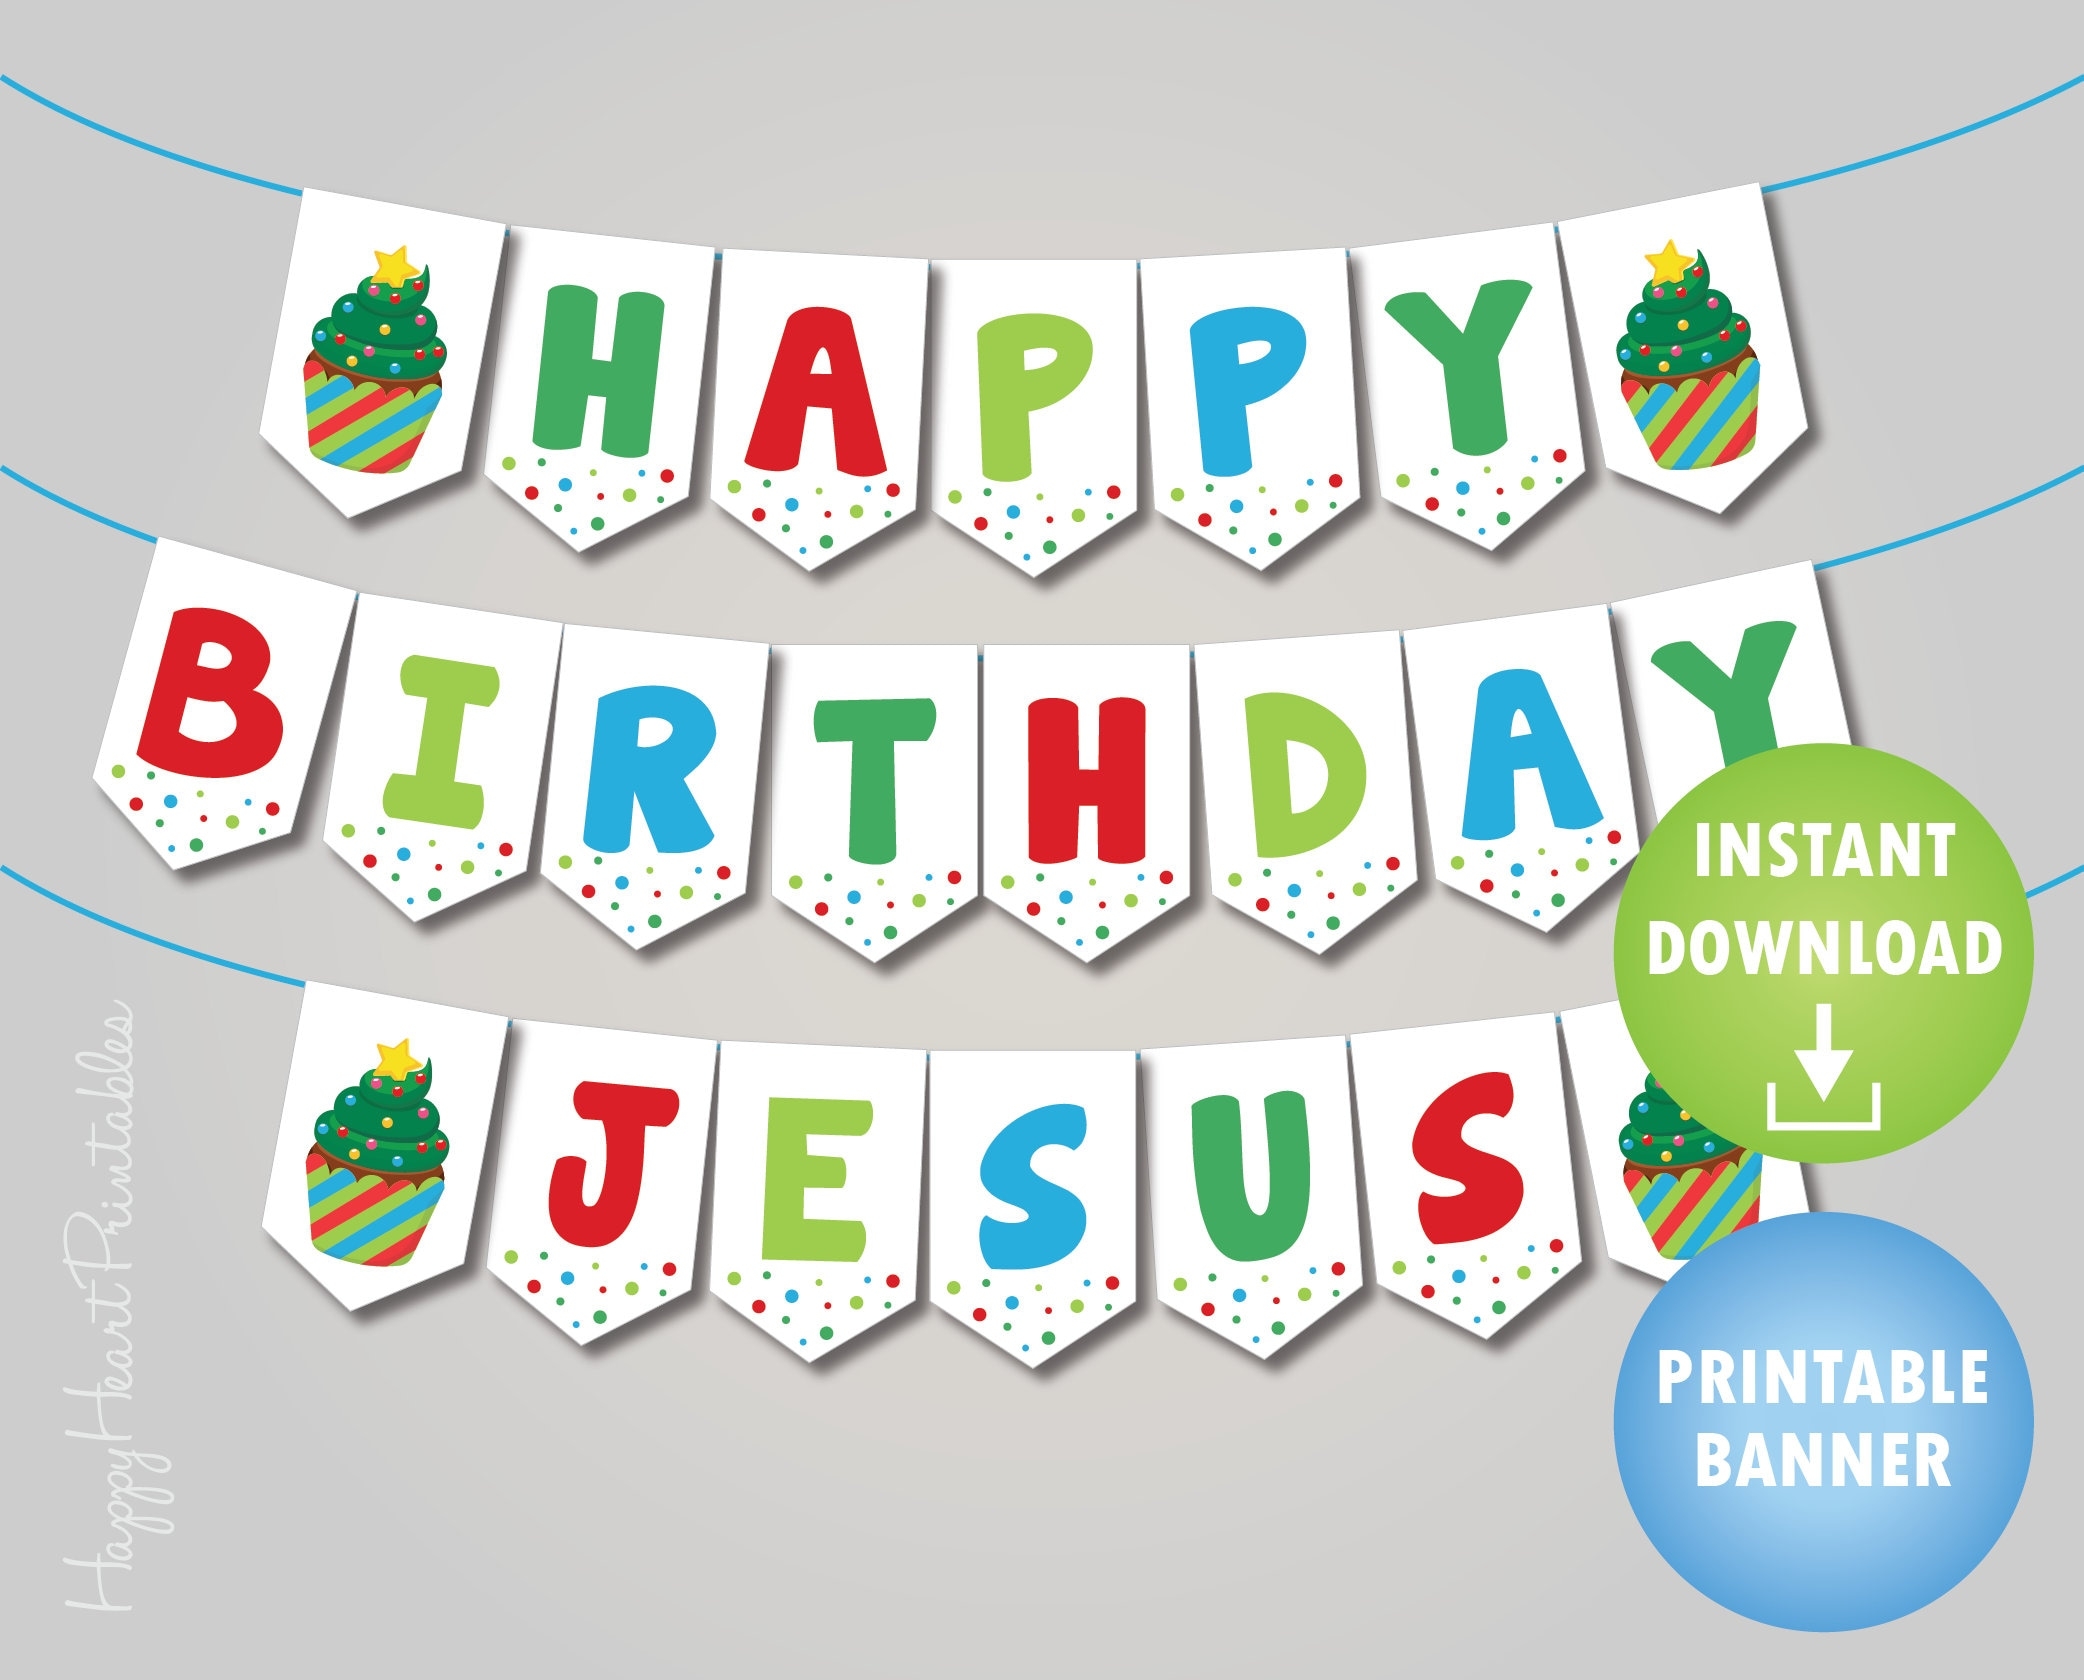 Happy Birthday Jesus Printables